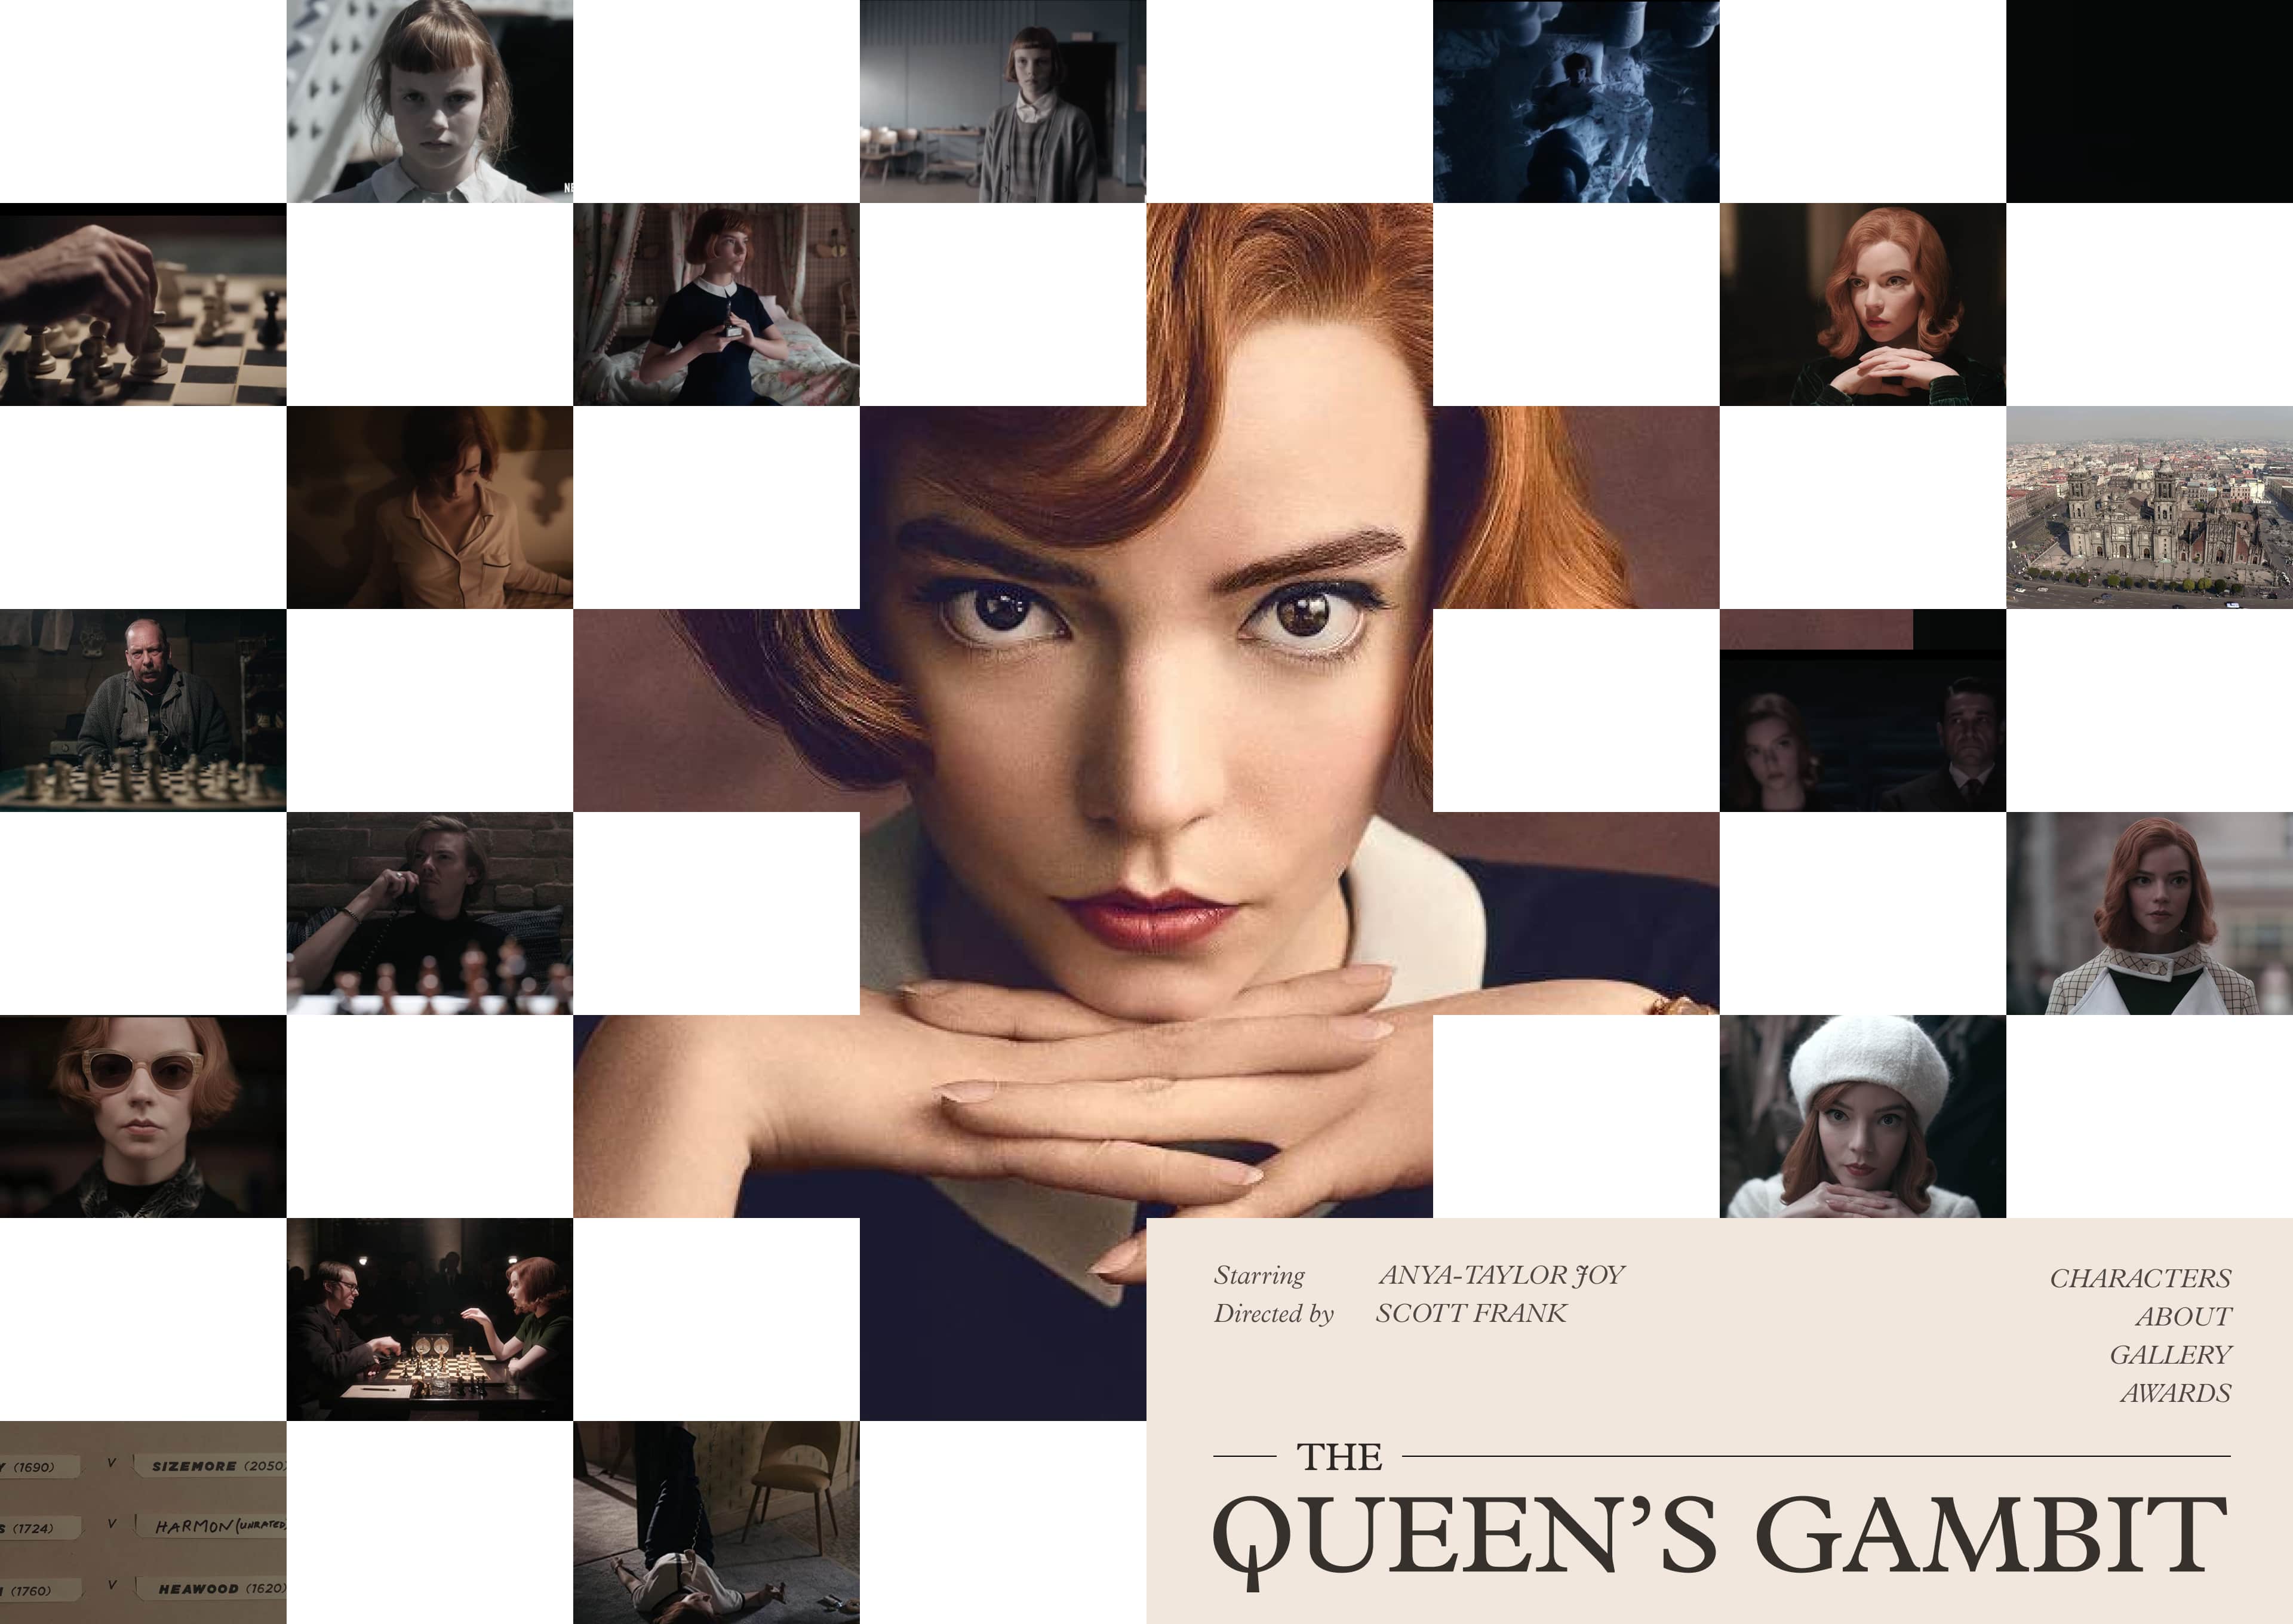 Queen's gambit unofficial website